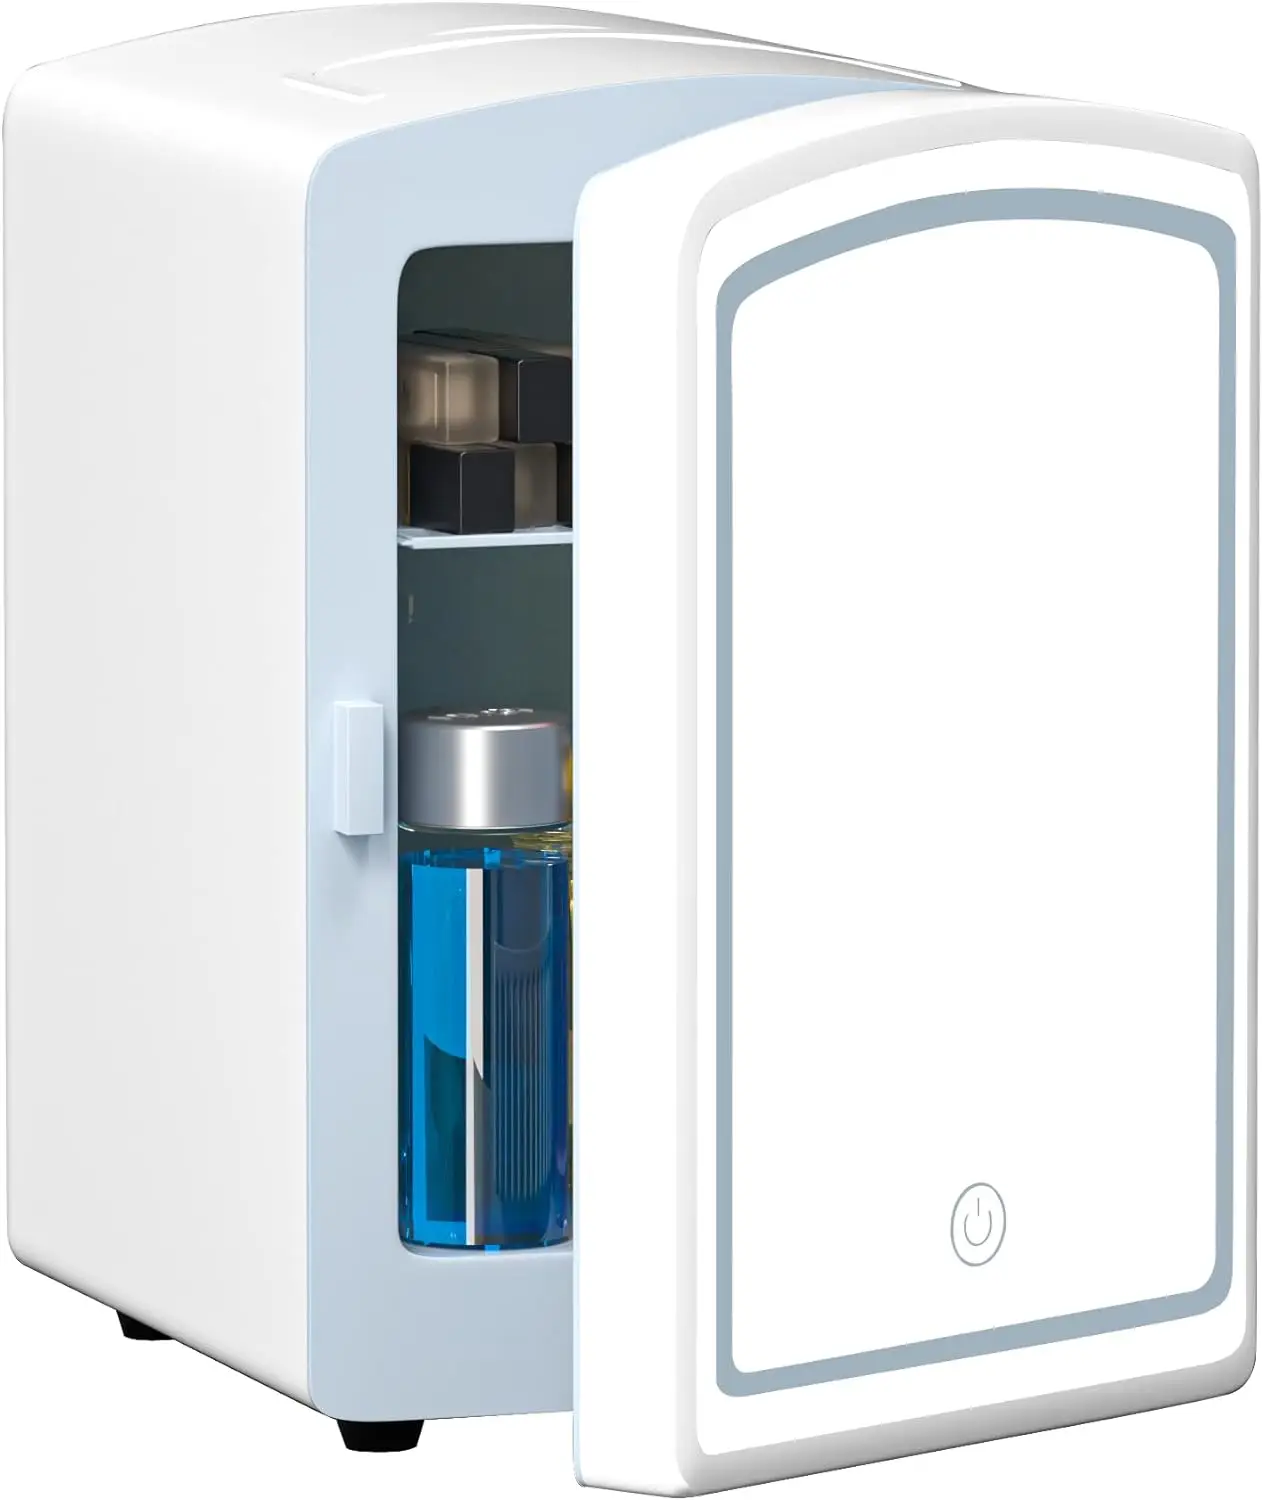 

Холодильник для ухода за кожей, 4-литровый портативный маленький холодильник с зеркалом, горячий или холодный персональный холодильник для спальни, офиса, C